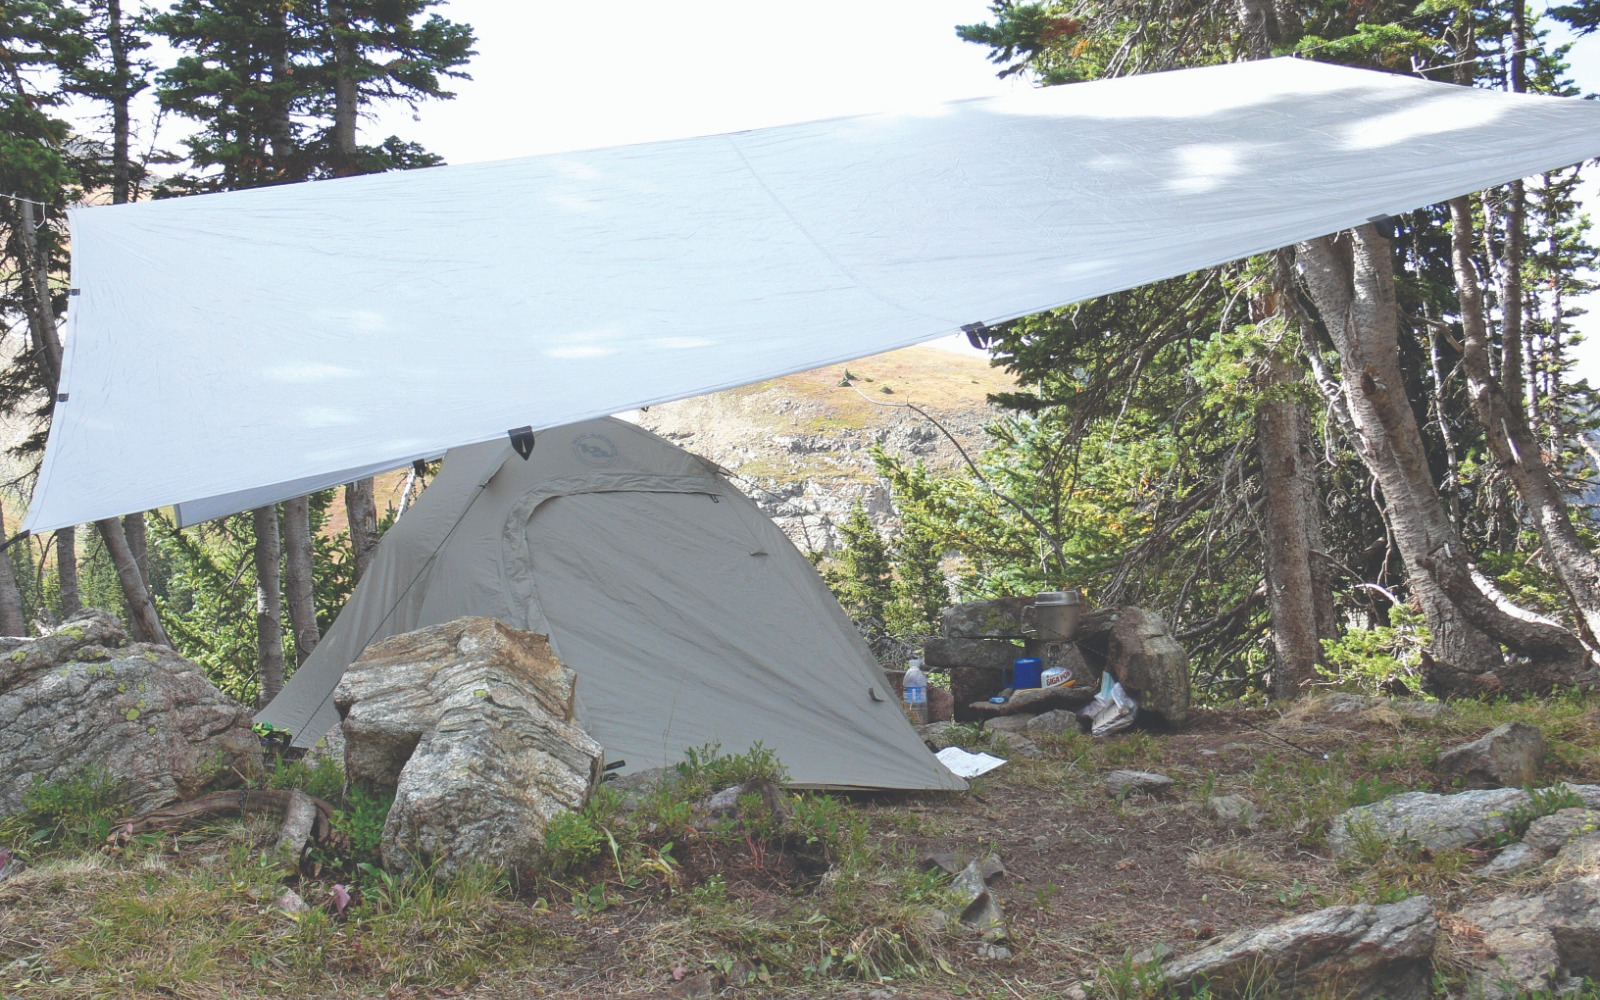 A set up tent